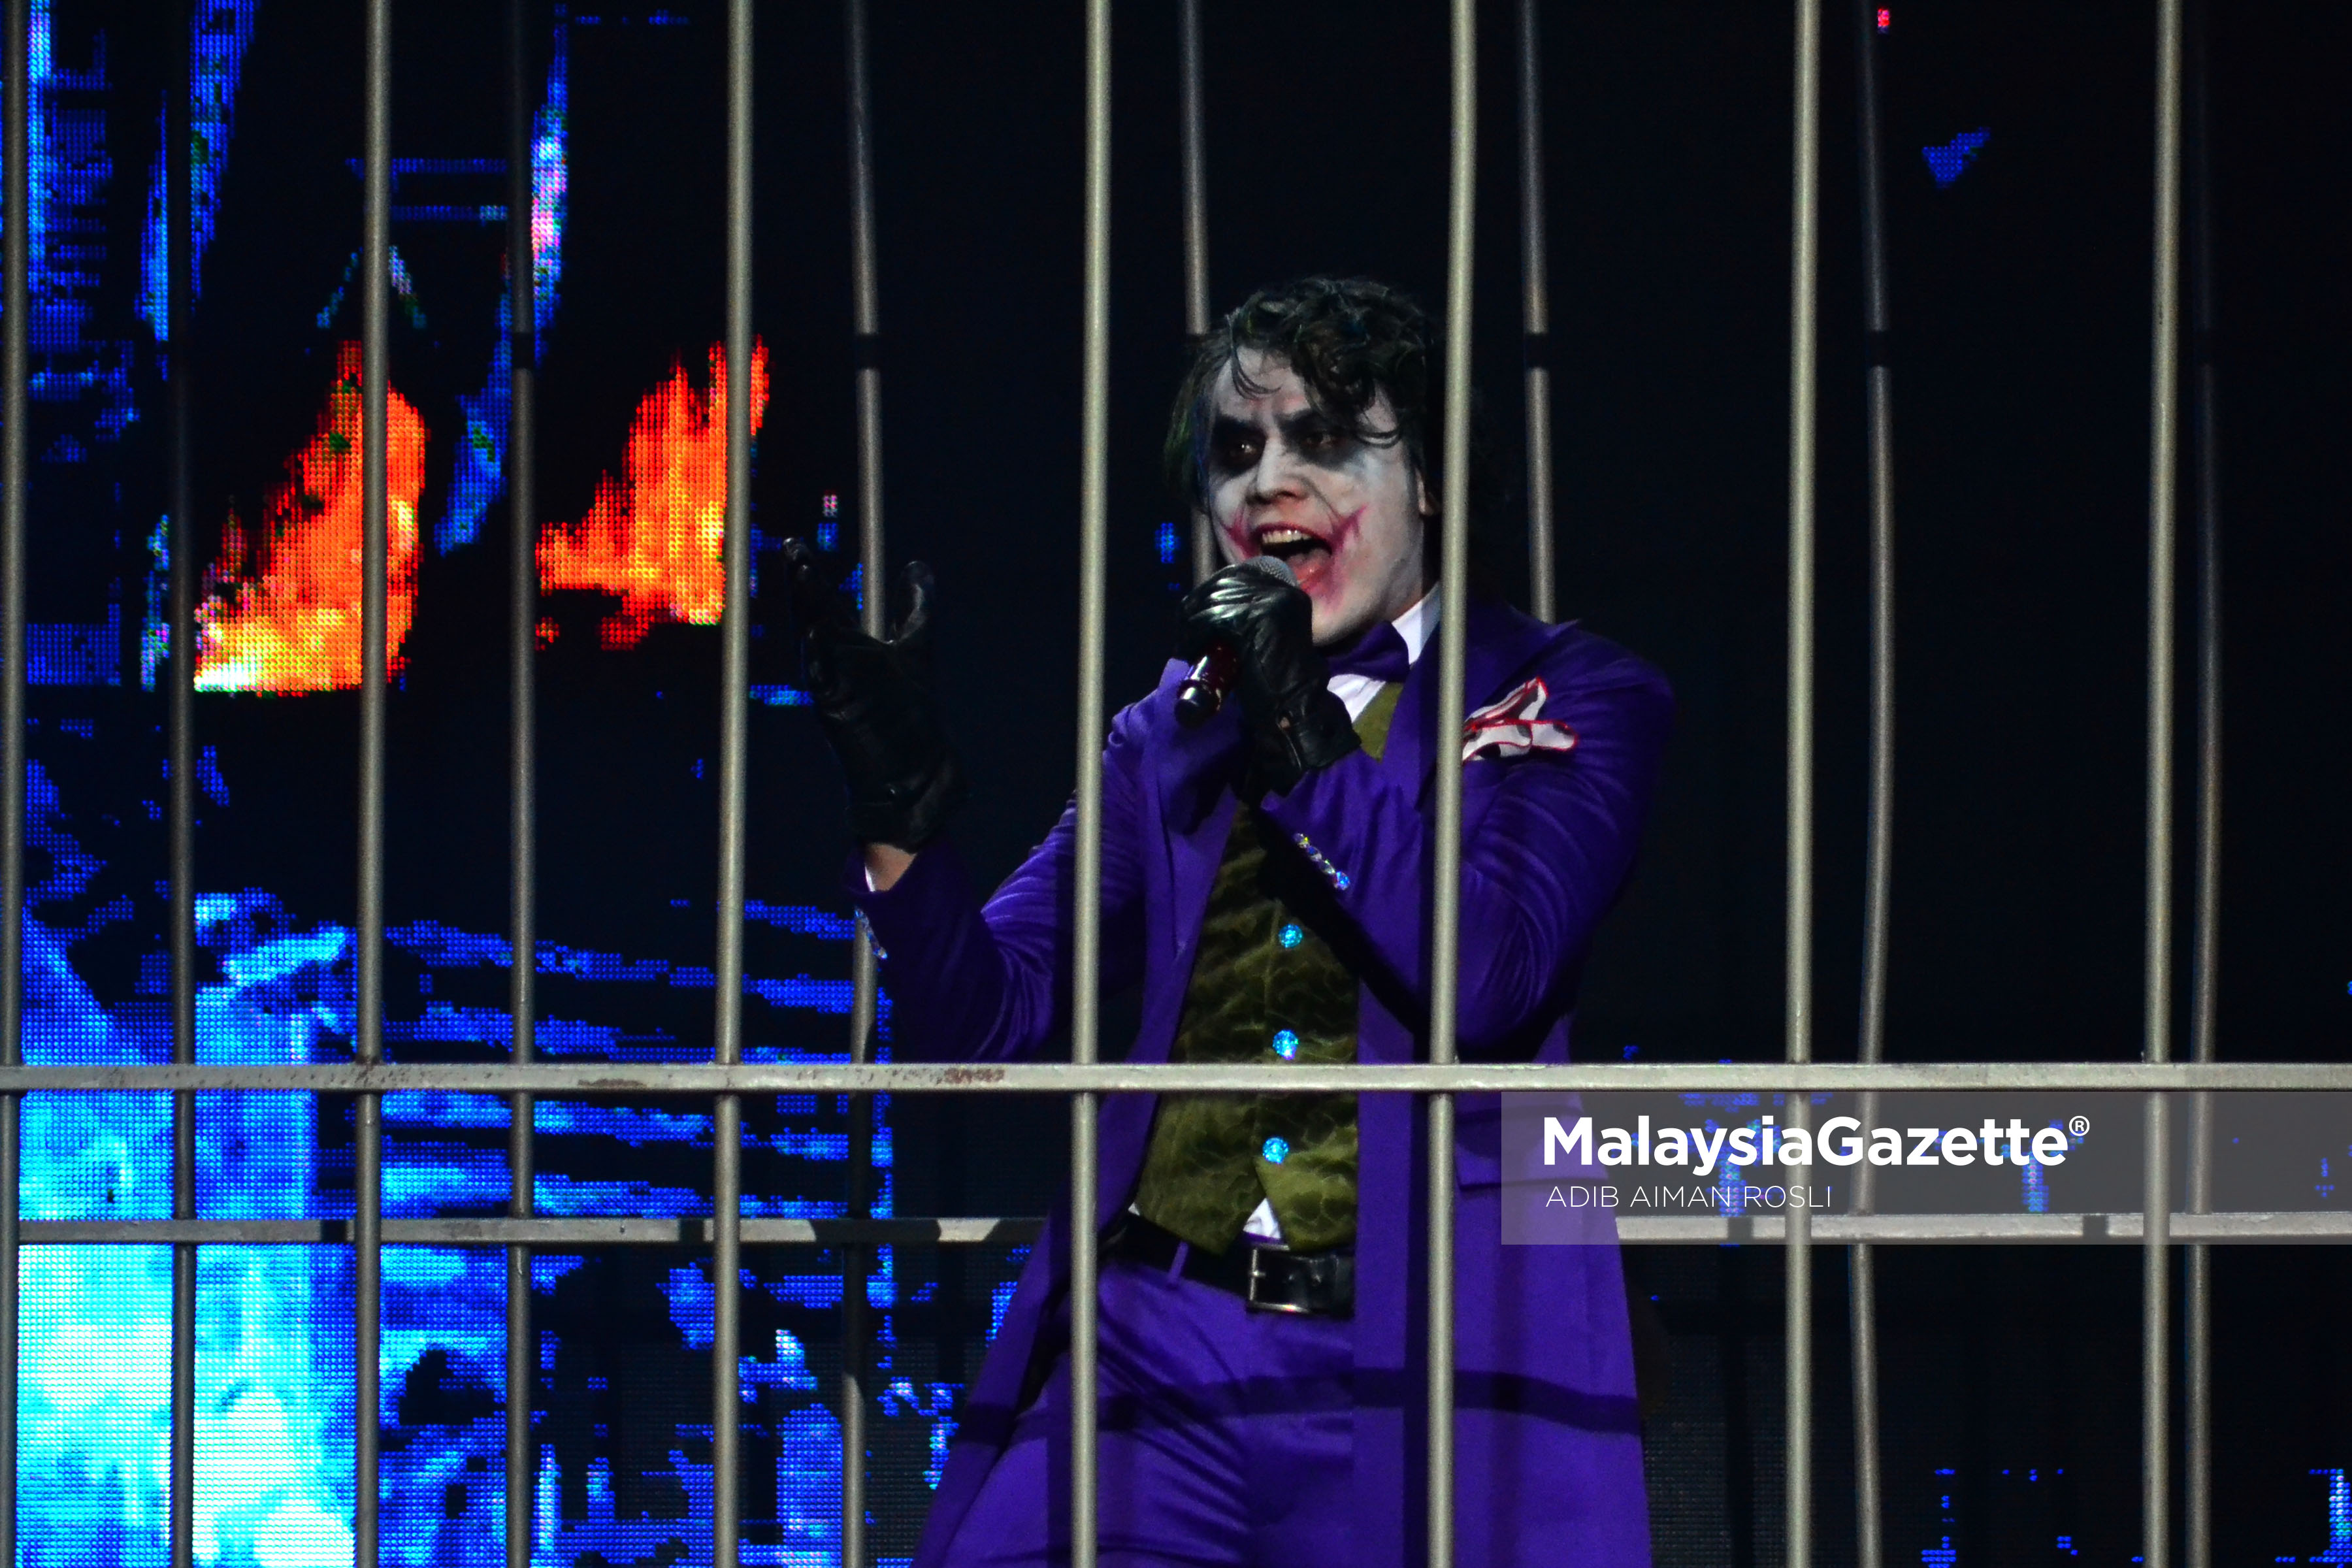 Persembahan dari Kumpulan Akim & Majistret yang membawa watak jocker pada malam Anugerah Juara Lagu ke 31 di Pusat Dagangan Dunia Putra (PWTC), Kuala Lumpur. foto ADIB AIMAN ROSLI, 22 JANUARI 2017